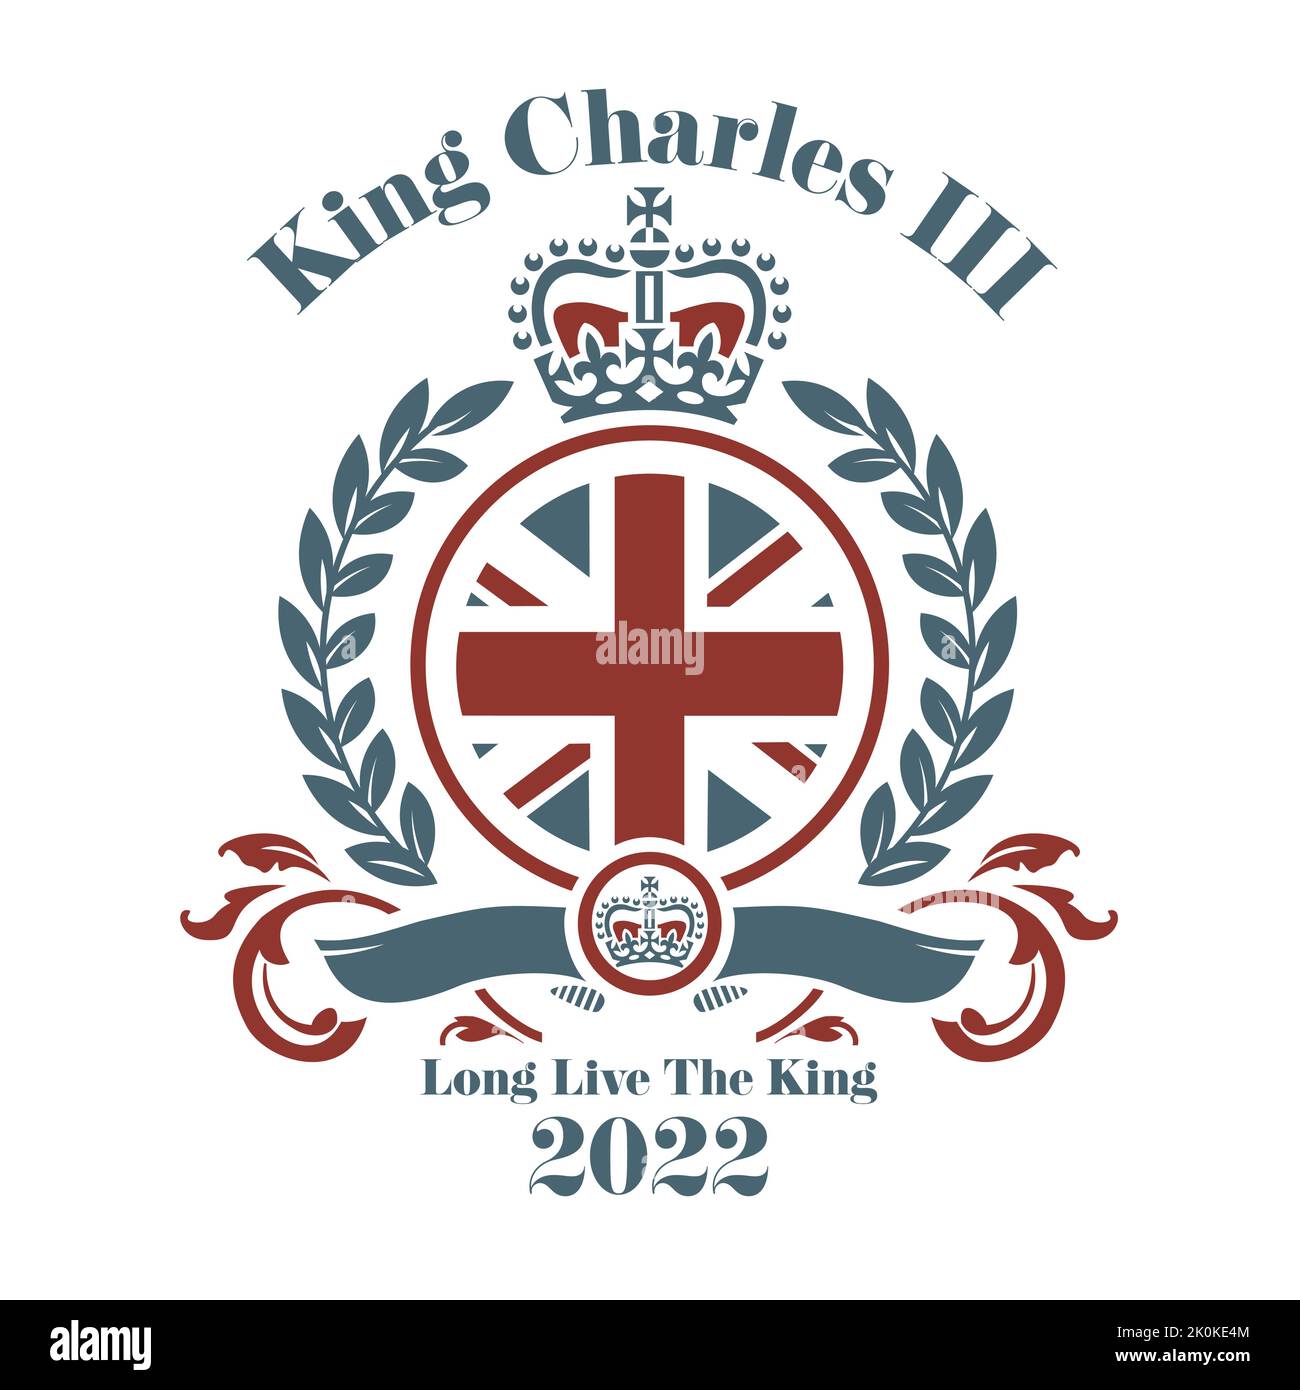 König Charles III 2022 Vektorgrafik - Prinz Charles wird König Charles nach dem Tod der Königin. Stock Vektor